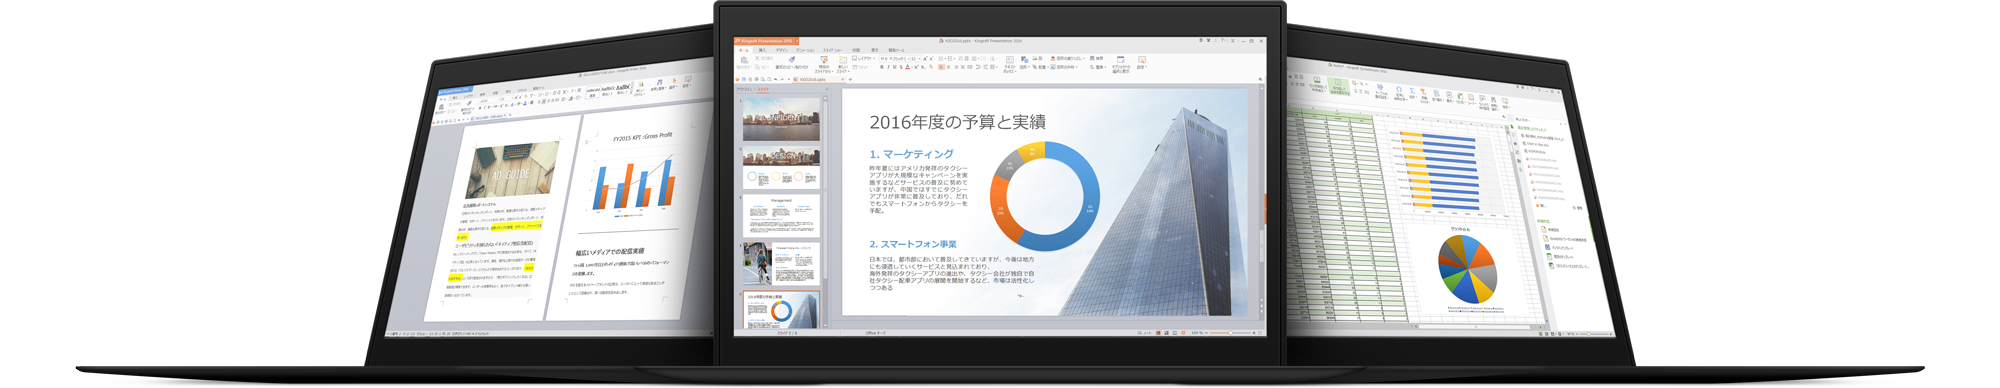 キングソフト、富士通ショッピングサイト「WEB MART」で 総合オフィスソフト「KINGSOFT Office」を提供